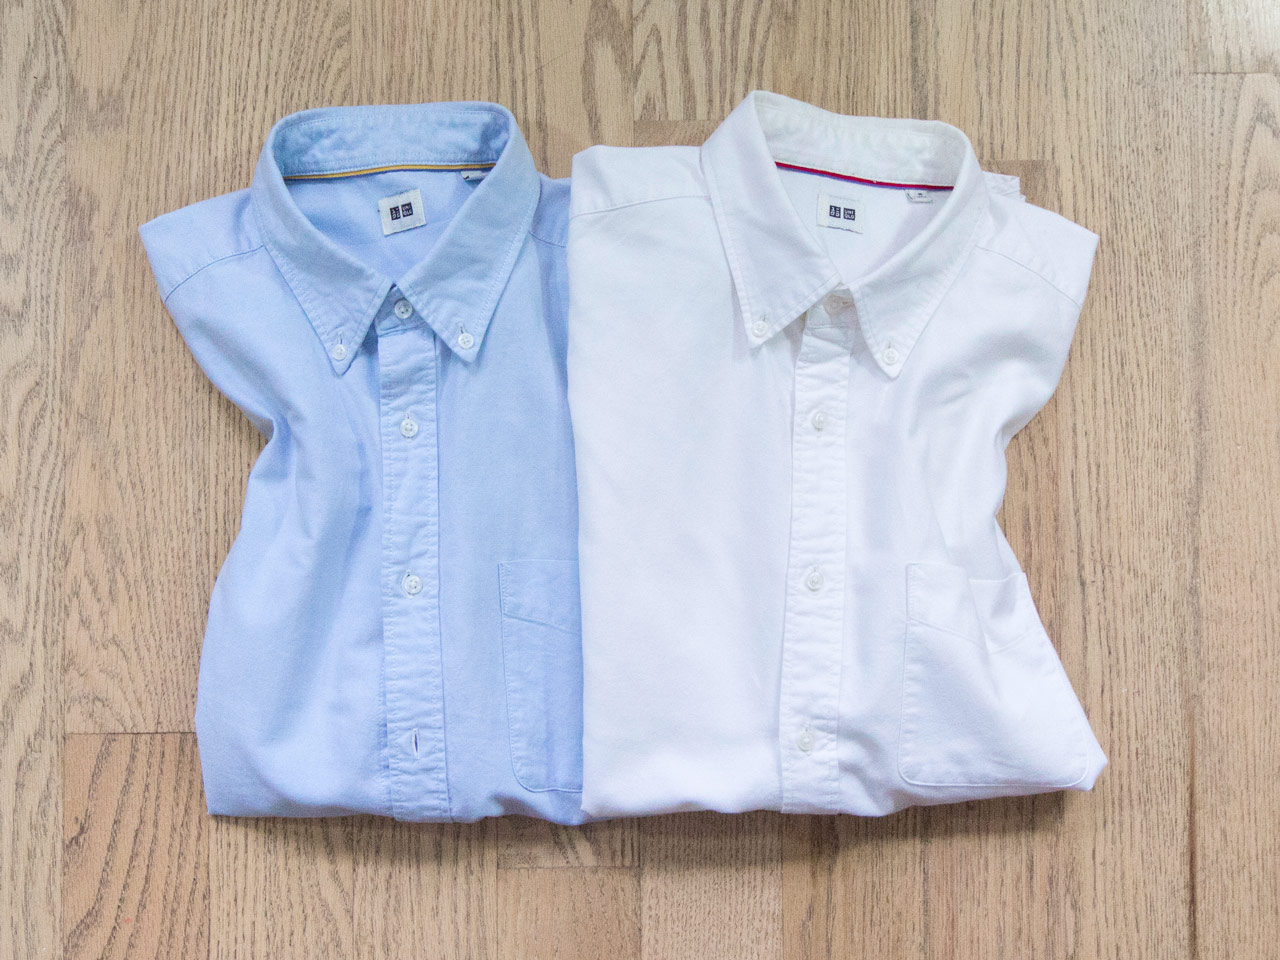 effortless essentials minimalist wardrobe - shirts